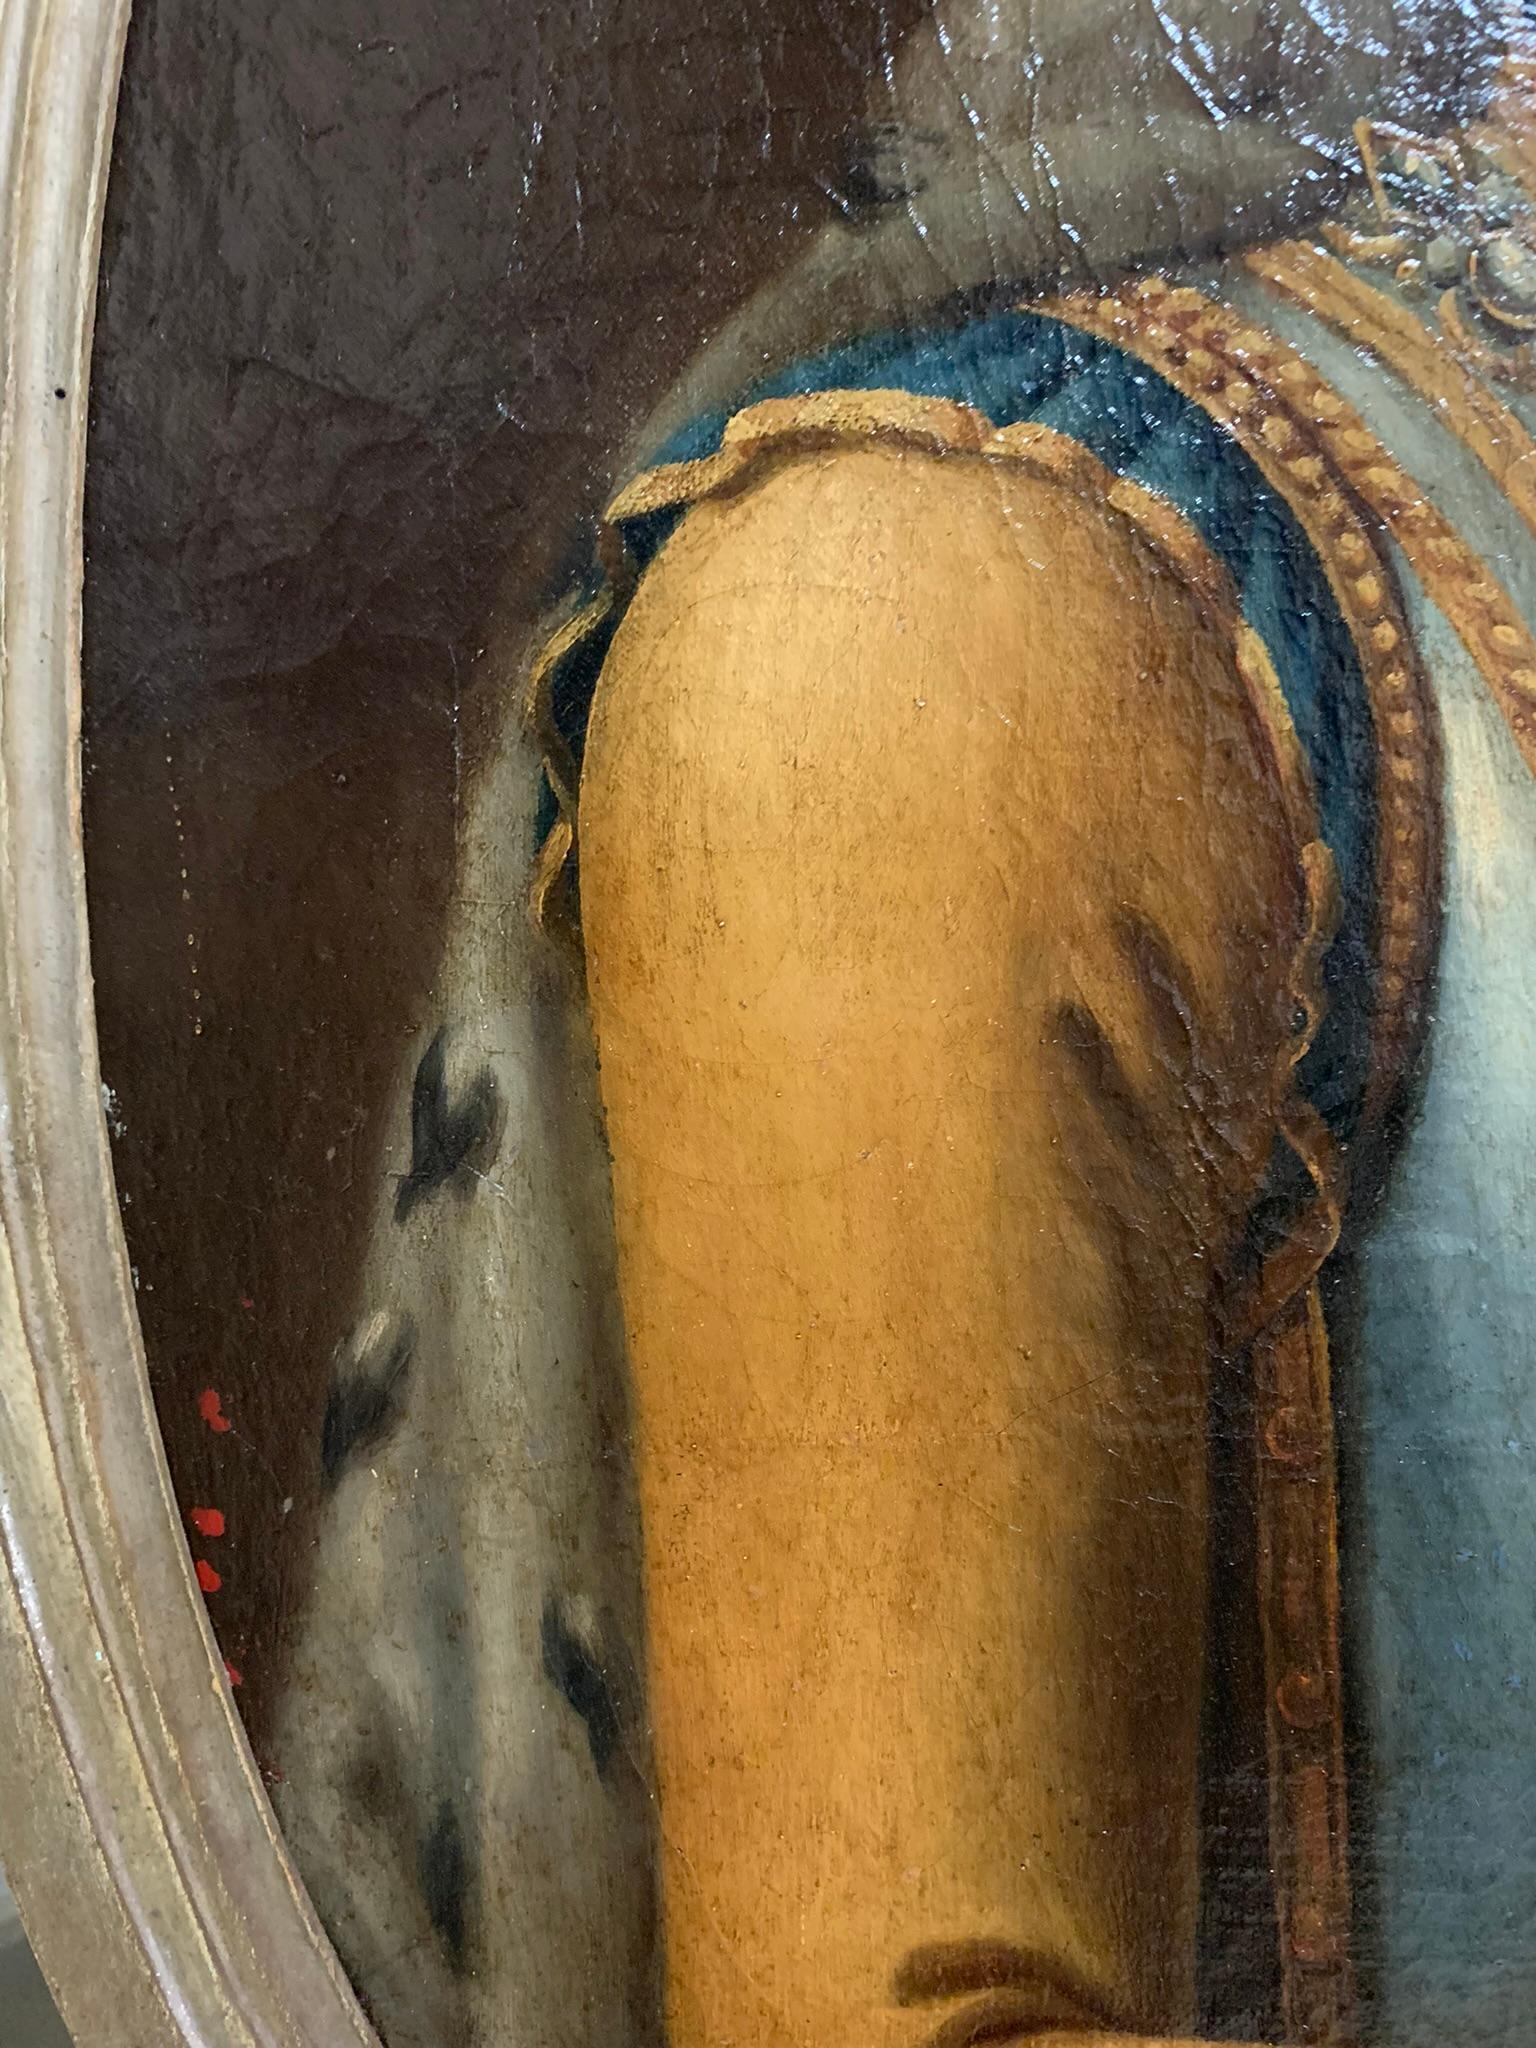 Ritratto del Re di Sardegna Vittorio Amedeo III di Savoia Ambito di Giovanni Panelalbo.

Portrait de Vittorio Amedeo III di Savoia (Torino, 26 giugno 1726 - Moncalieri, 16 ottobre 1796) fu re di Sardegna, duca di Savoia e sovrano dello stato sabaudo